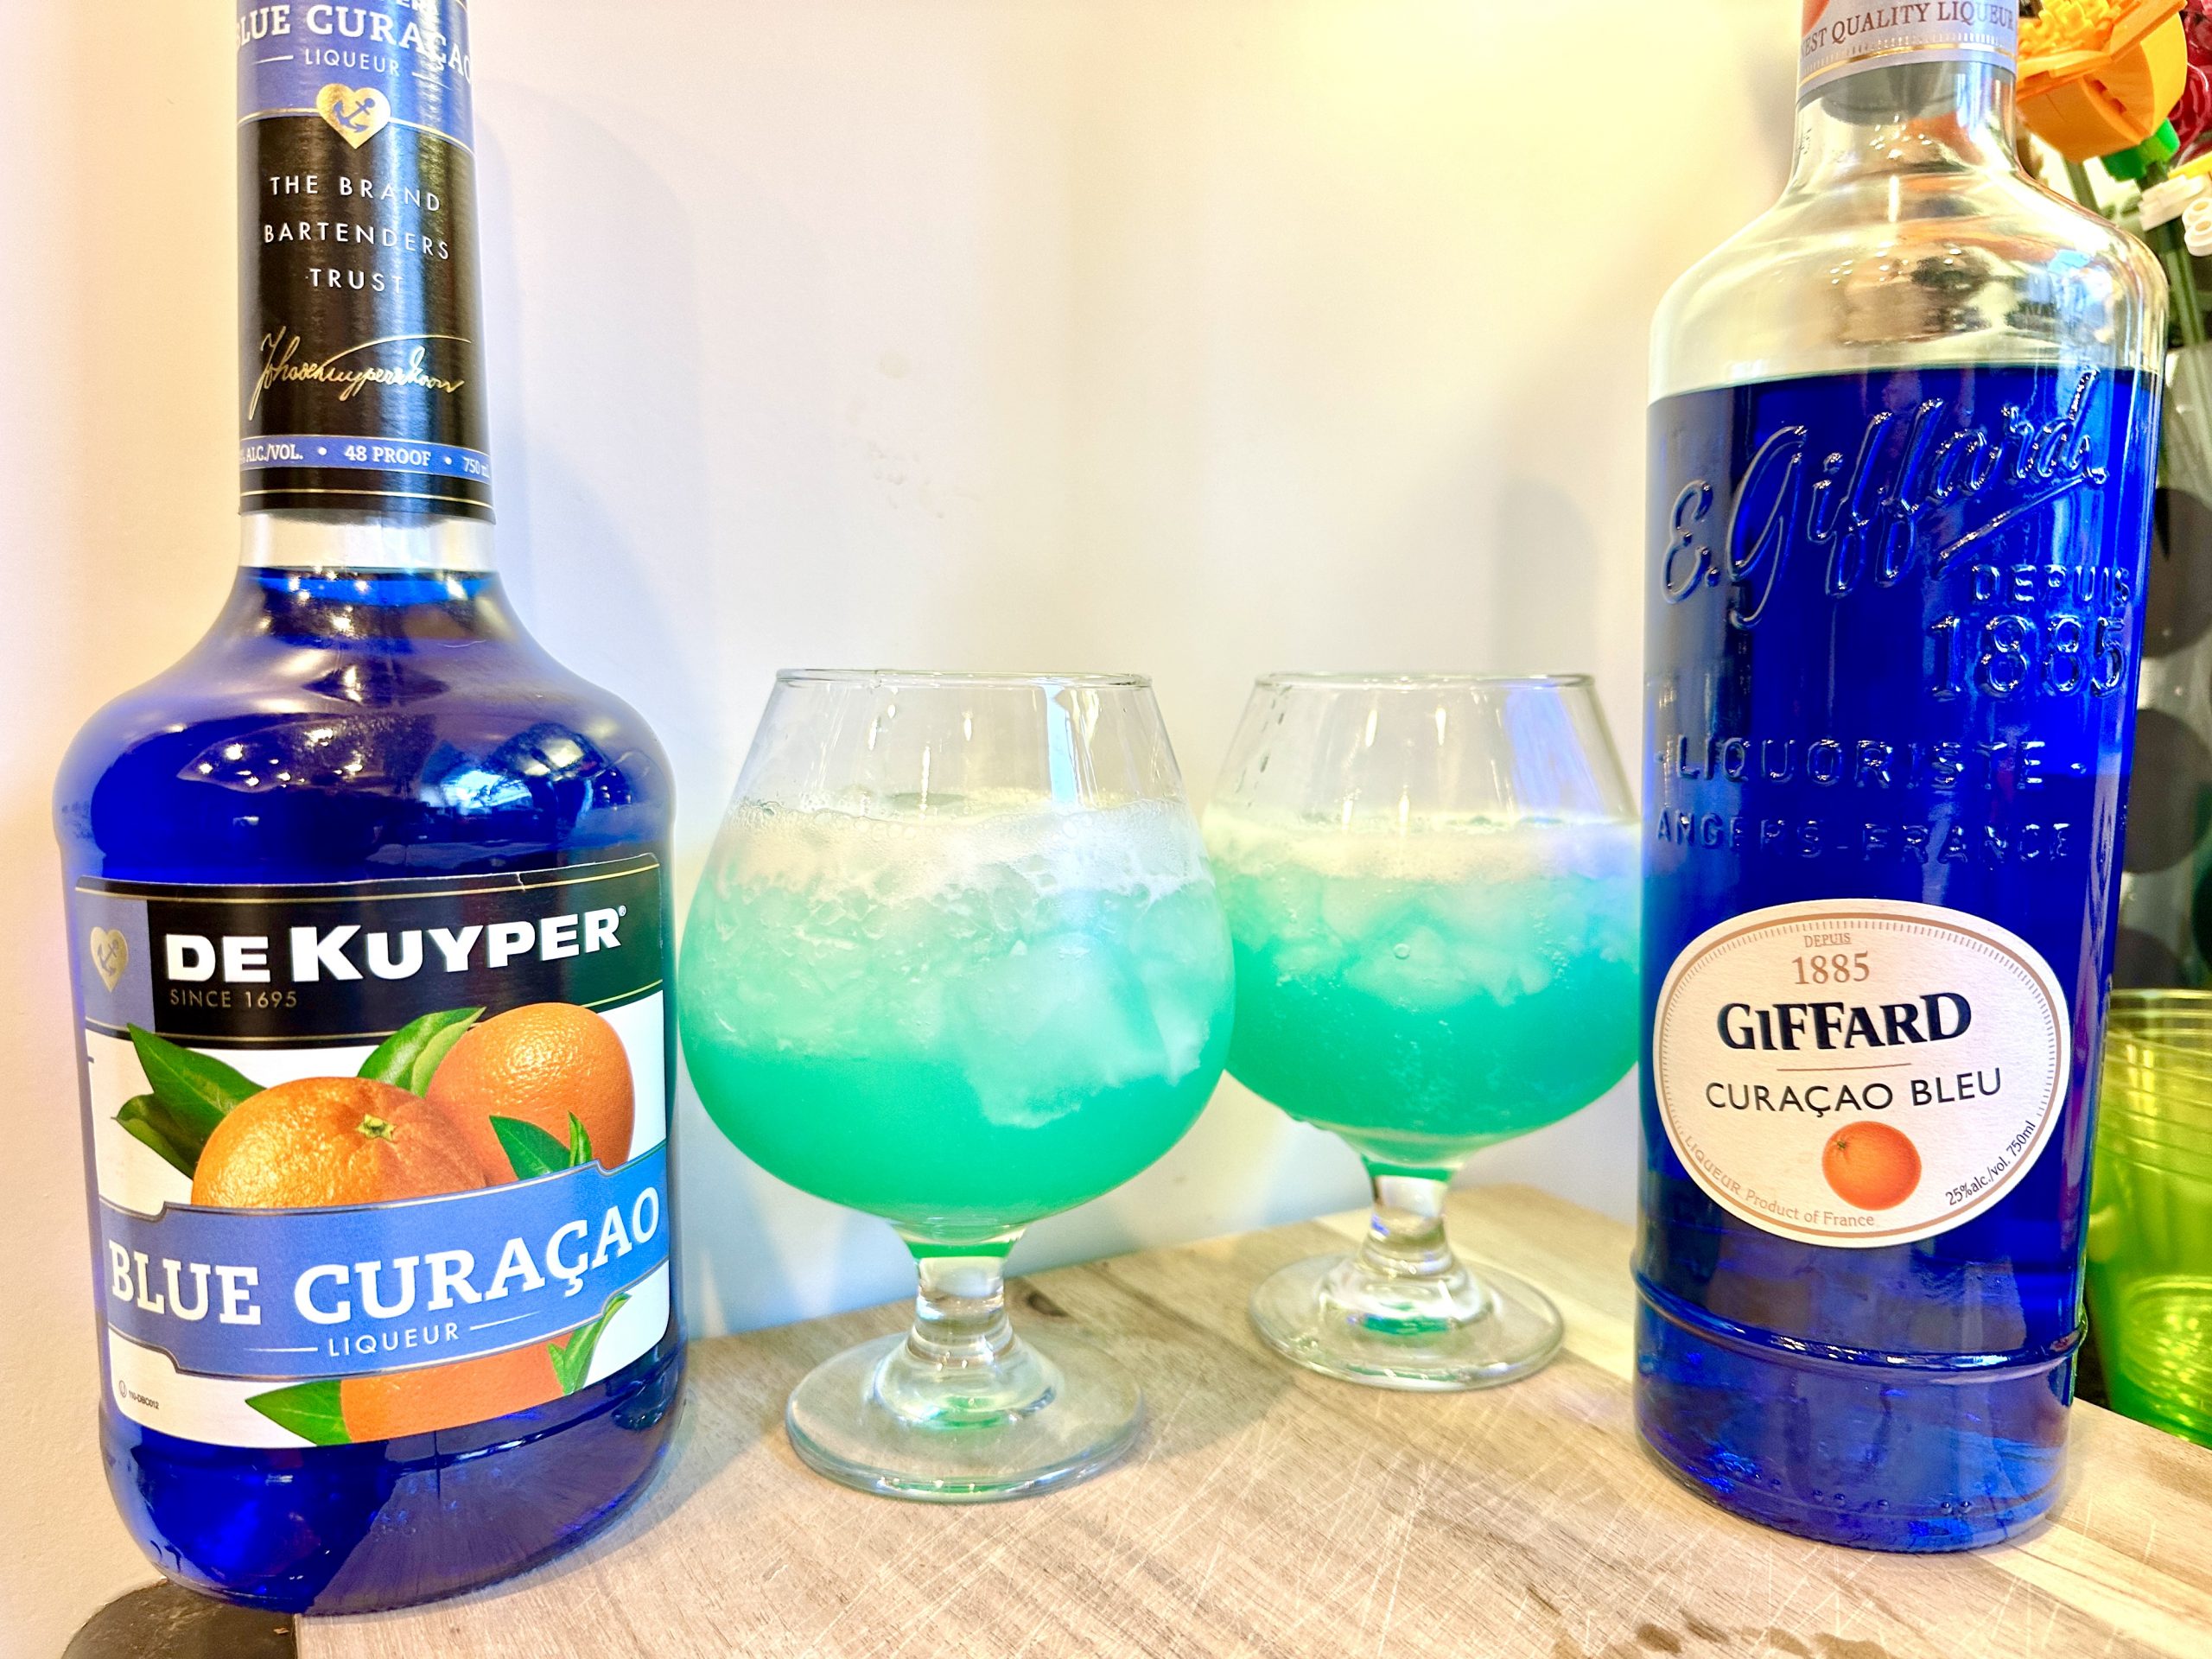 Curaçao bleu